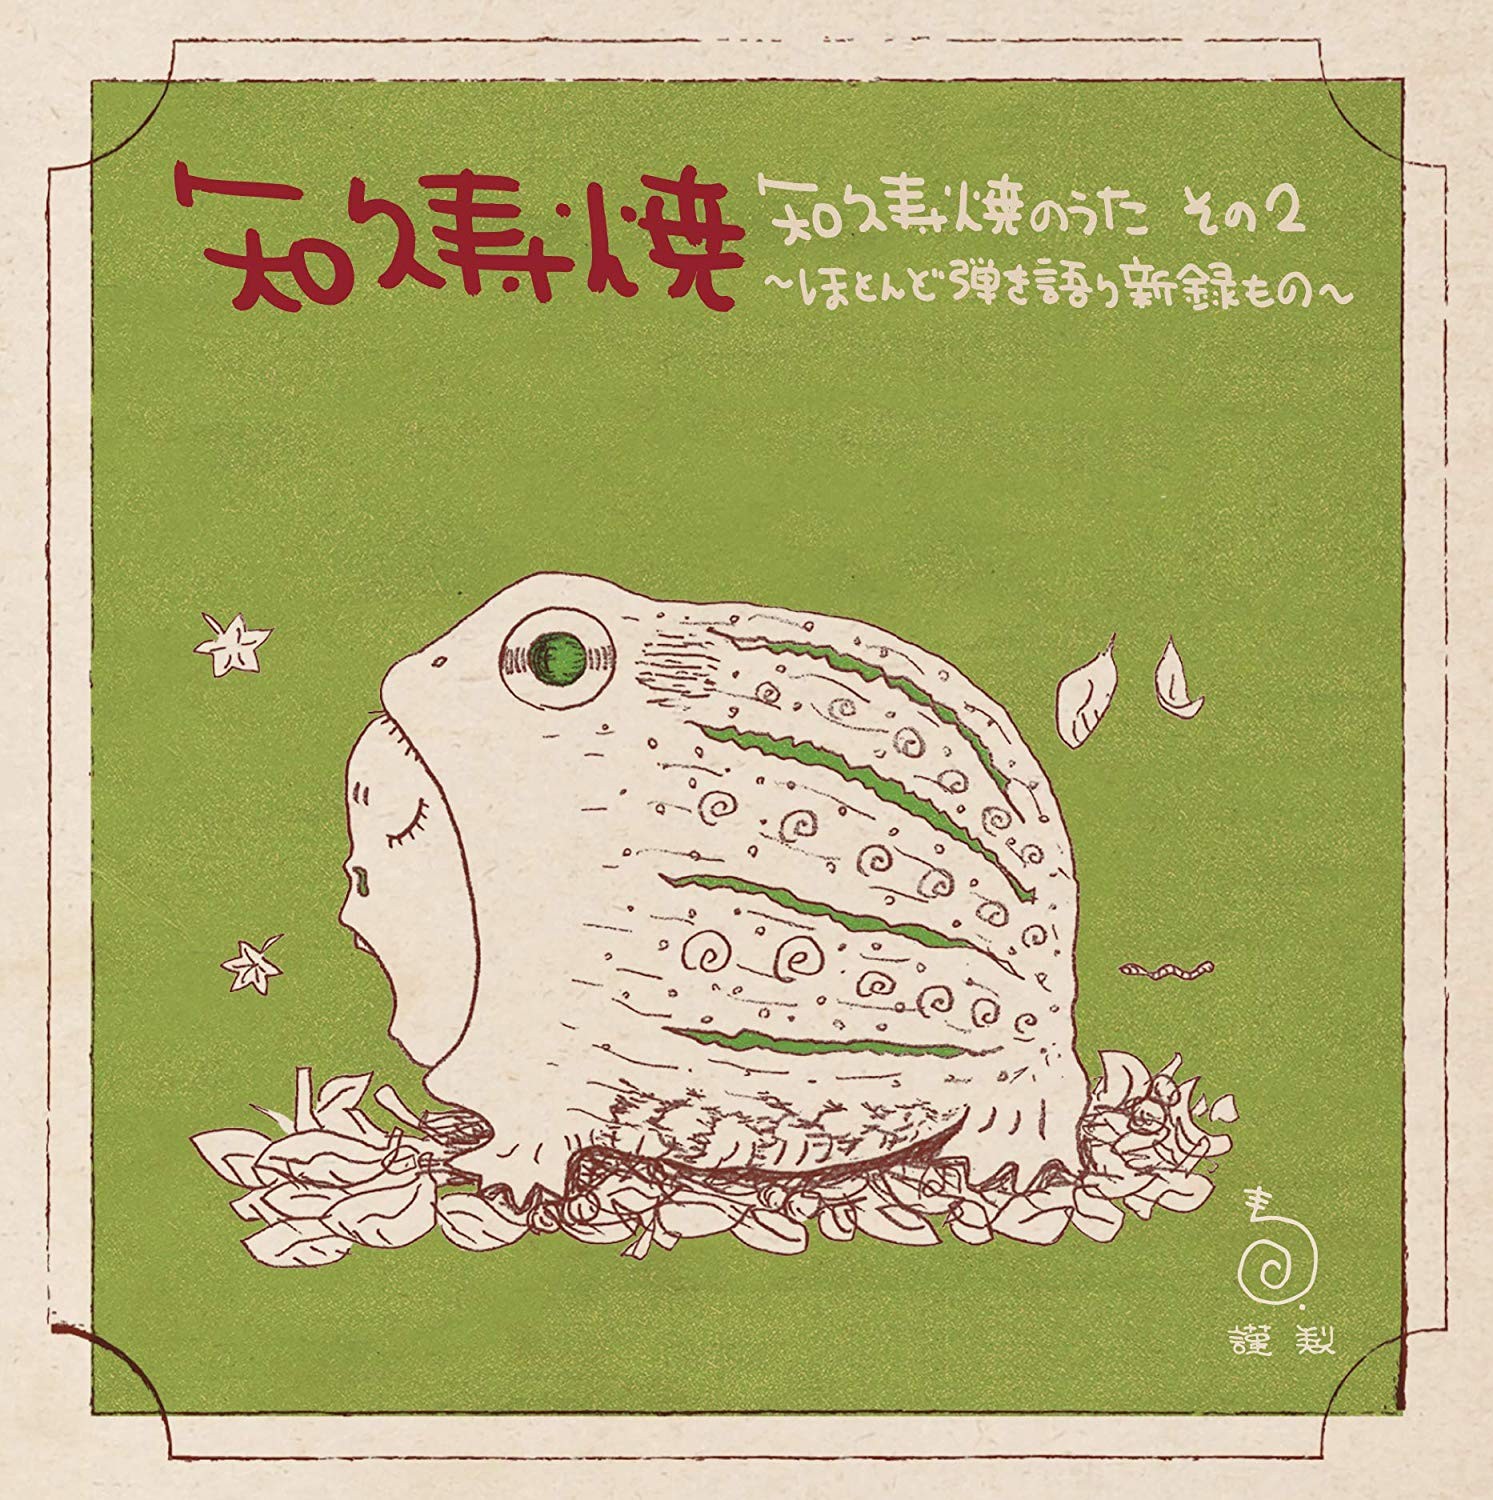 知久寿焼 (Toshiaki Chiku) – 知久寿焼のうた　その2～ほとんど弾き語り新録もの～ [FLAC + MP3 320 / CD] [2019.03.20]